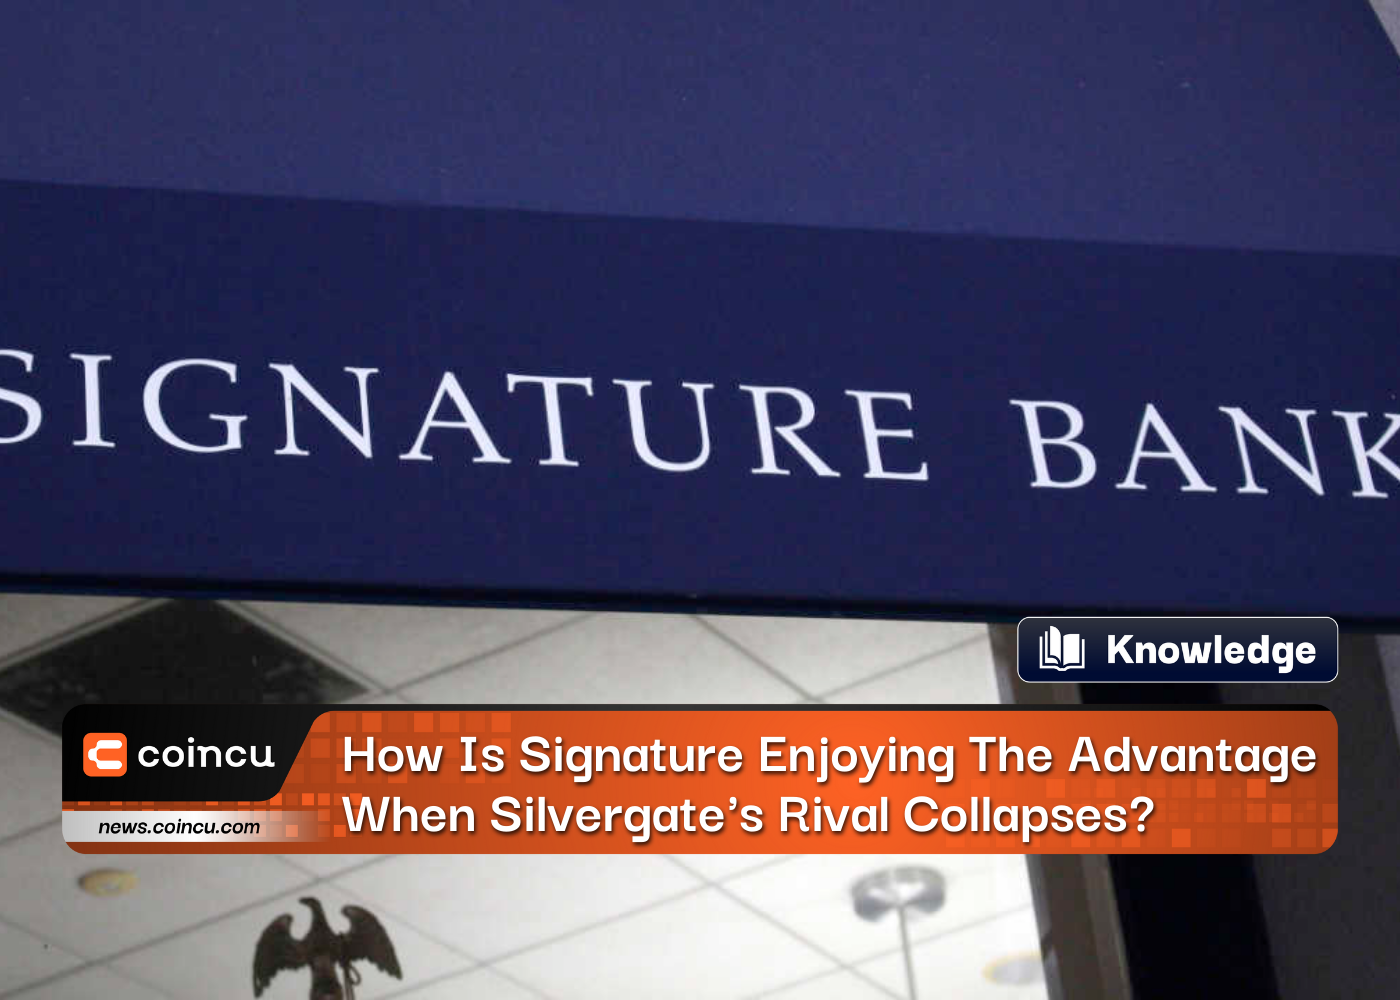 Silvergate'in Rakibi Çöktüğünde Signature Bank Nasıl Avantaj Sağlıyor?